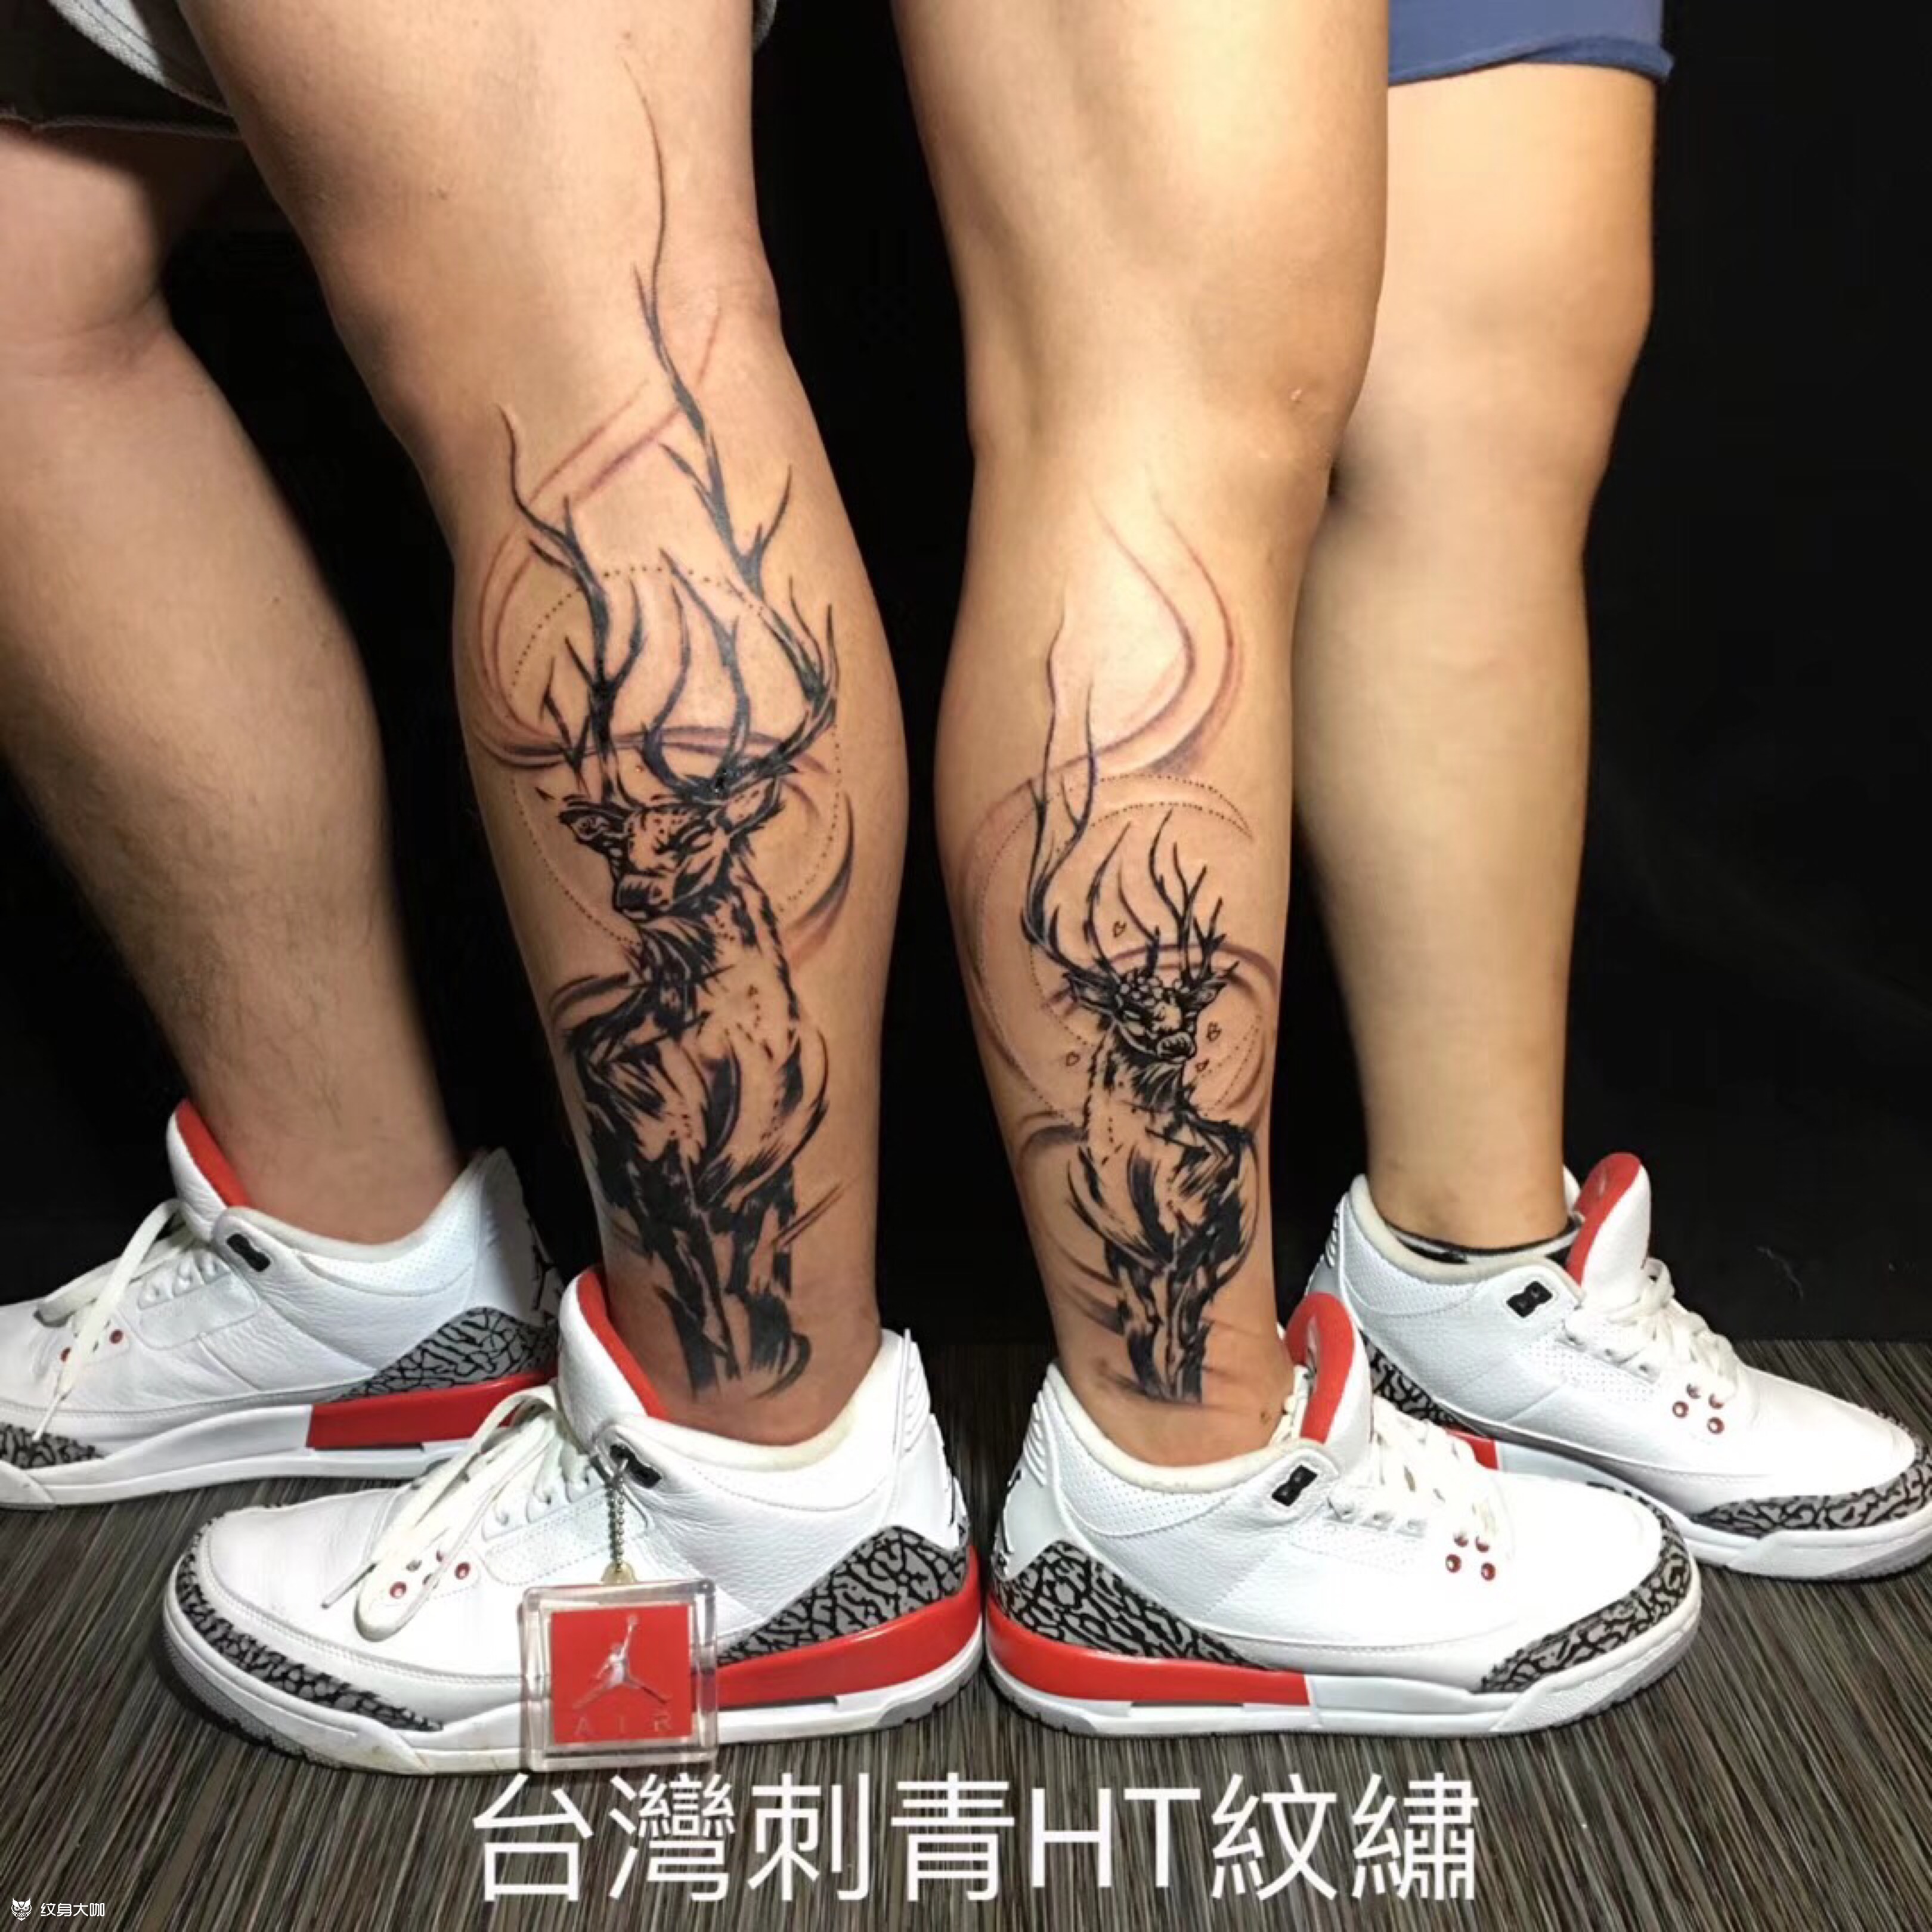 麋鹿_纹身图案手稿图片_crazytao的纹身作品集